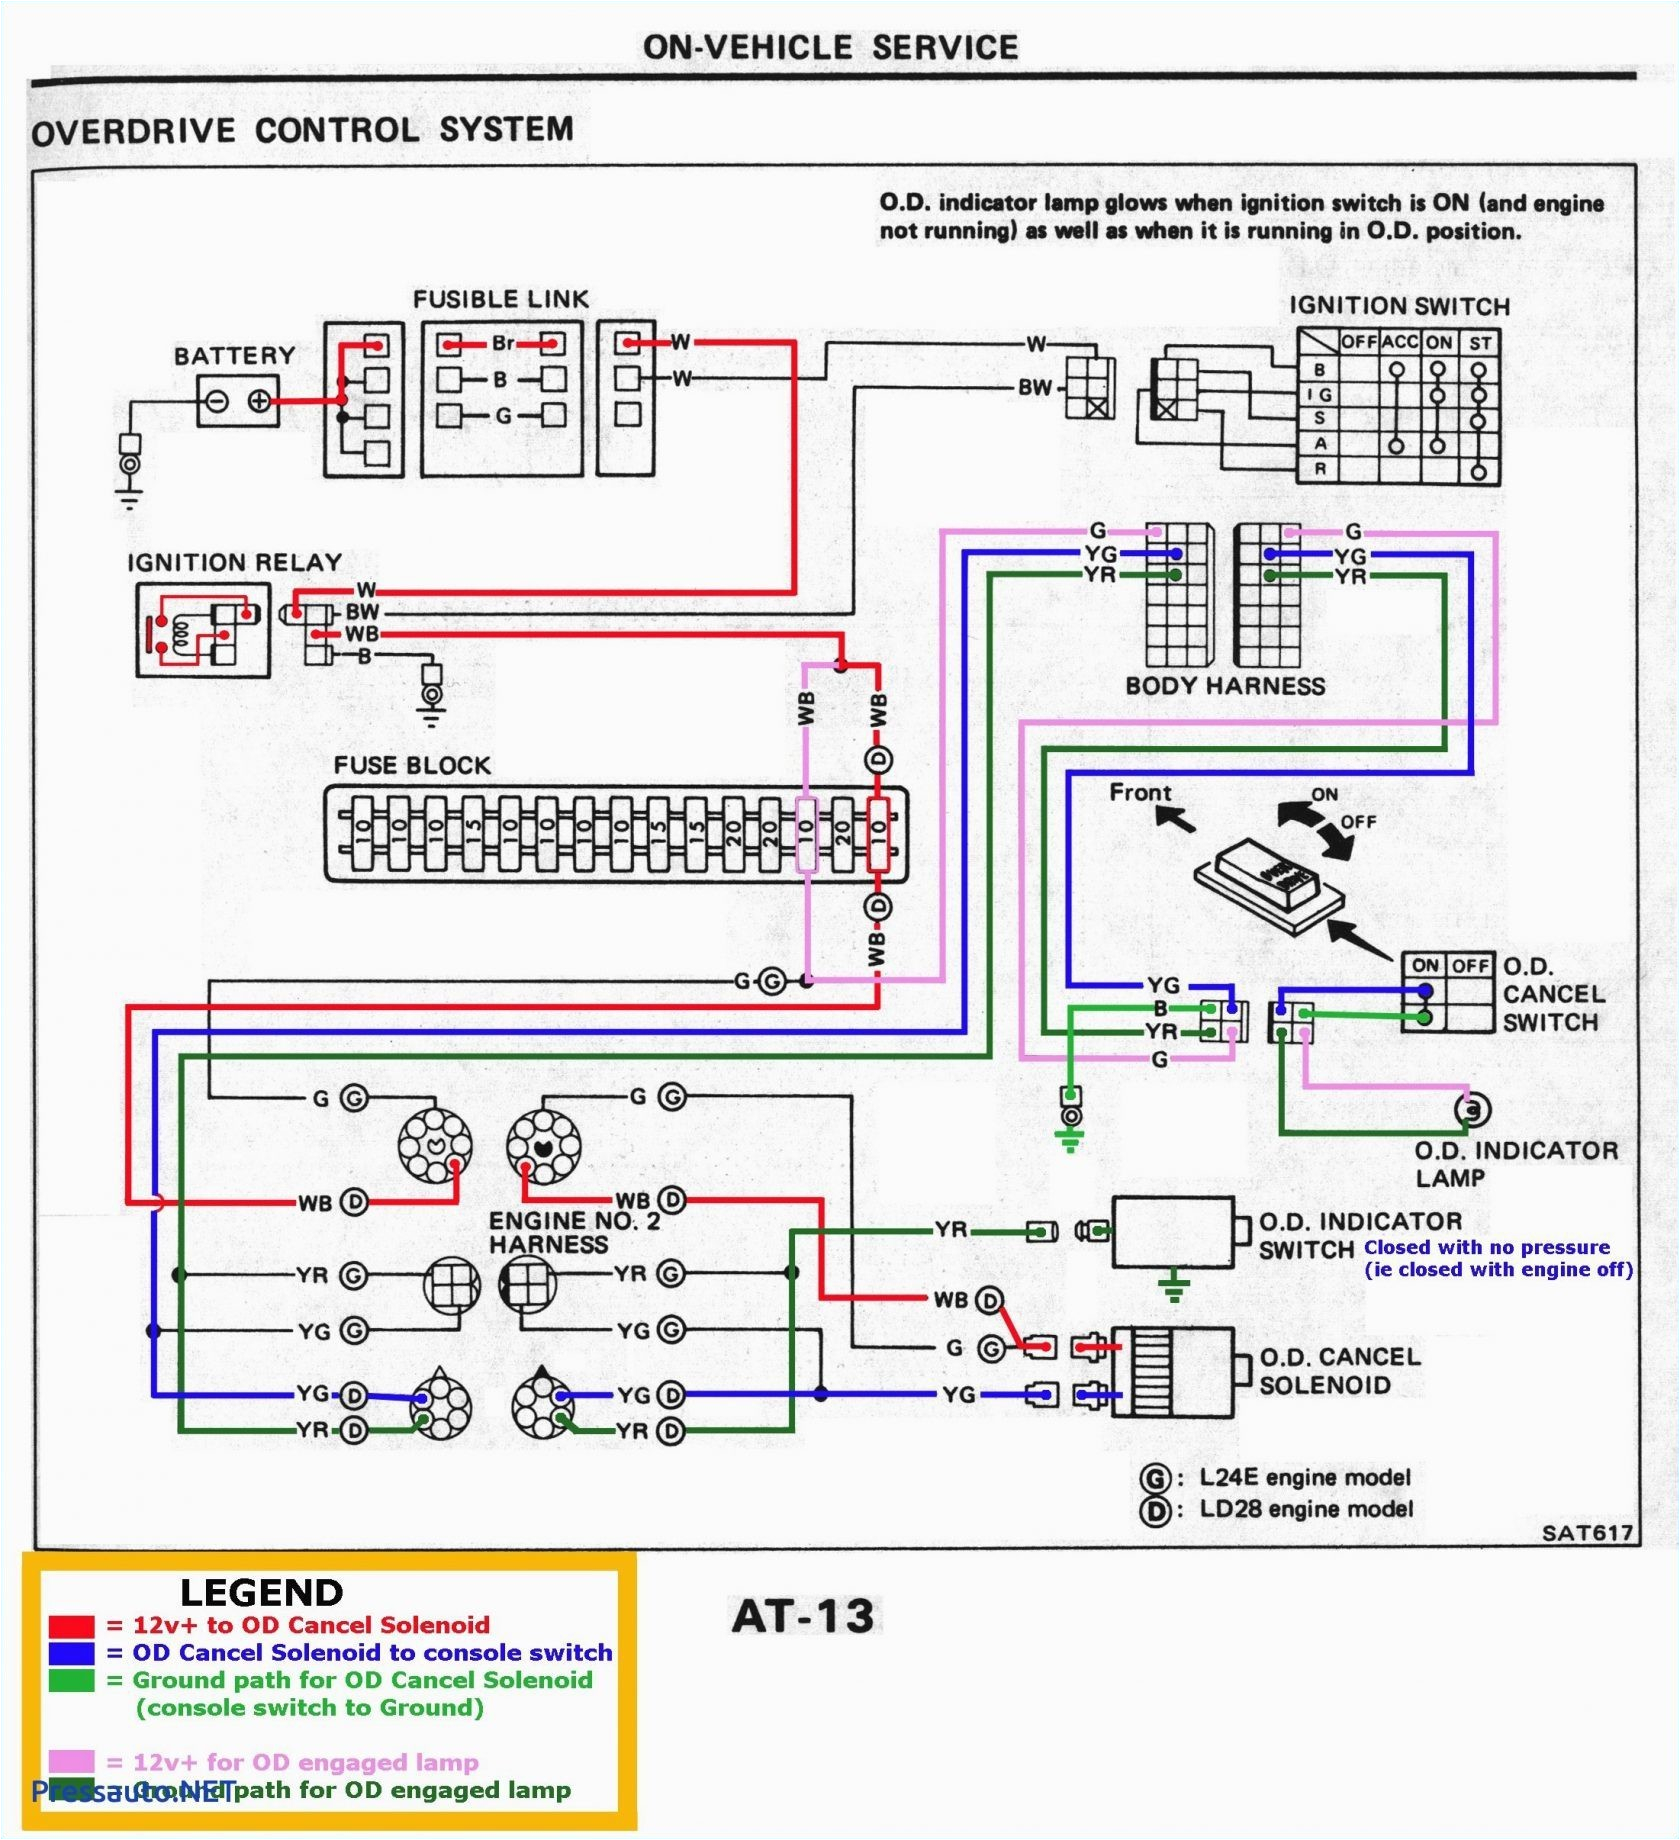 2005 tahoe power seat wiring diagrams wiring diagram id 2005 tahoe airbag wiring diagram